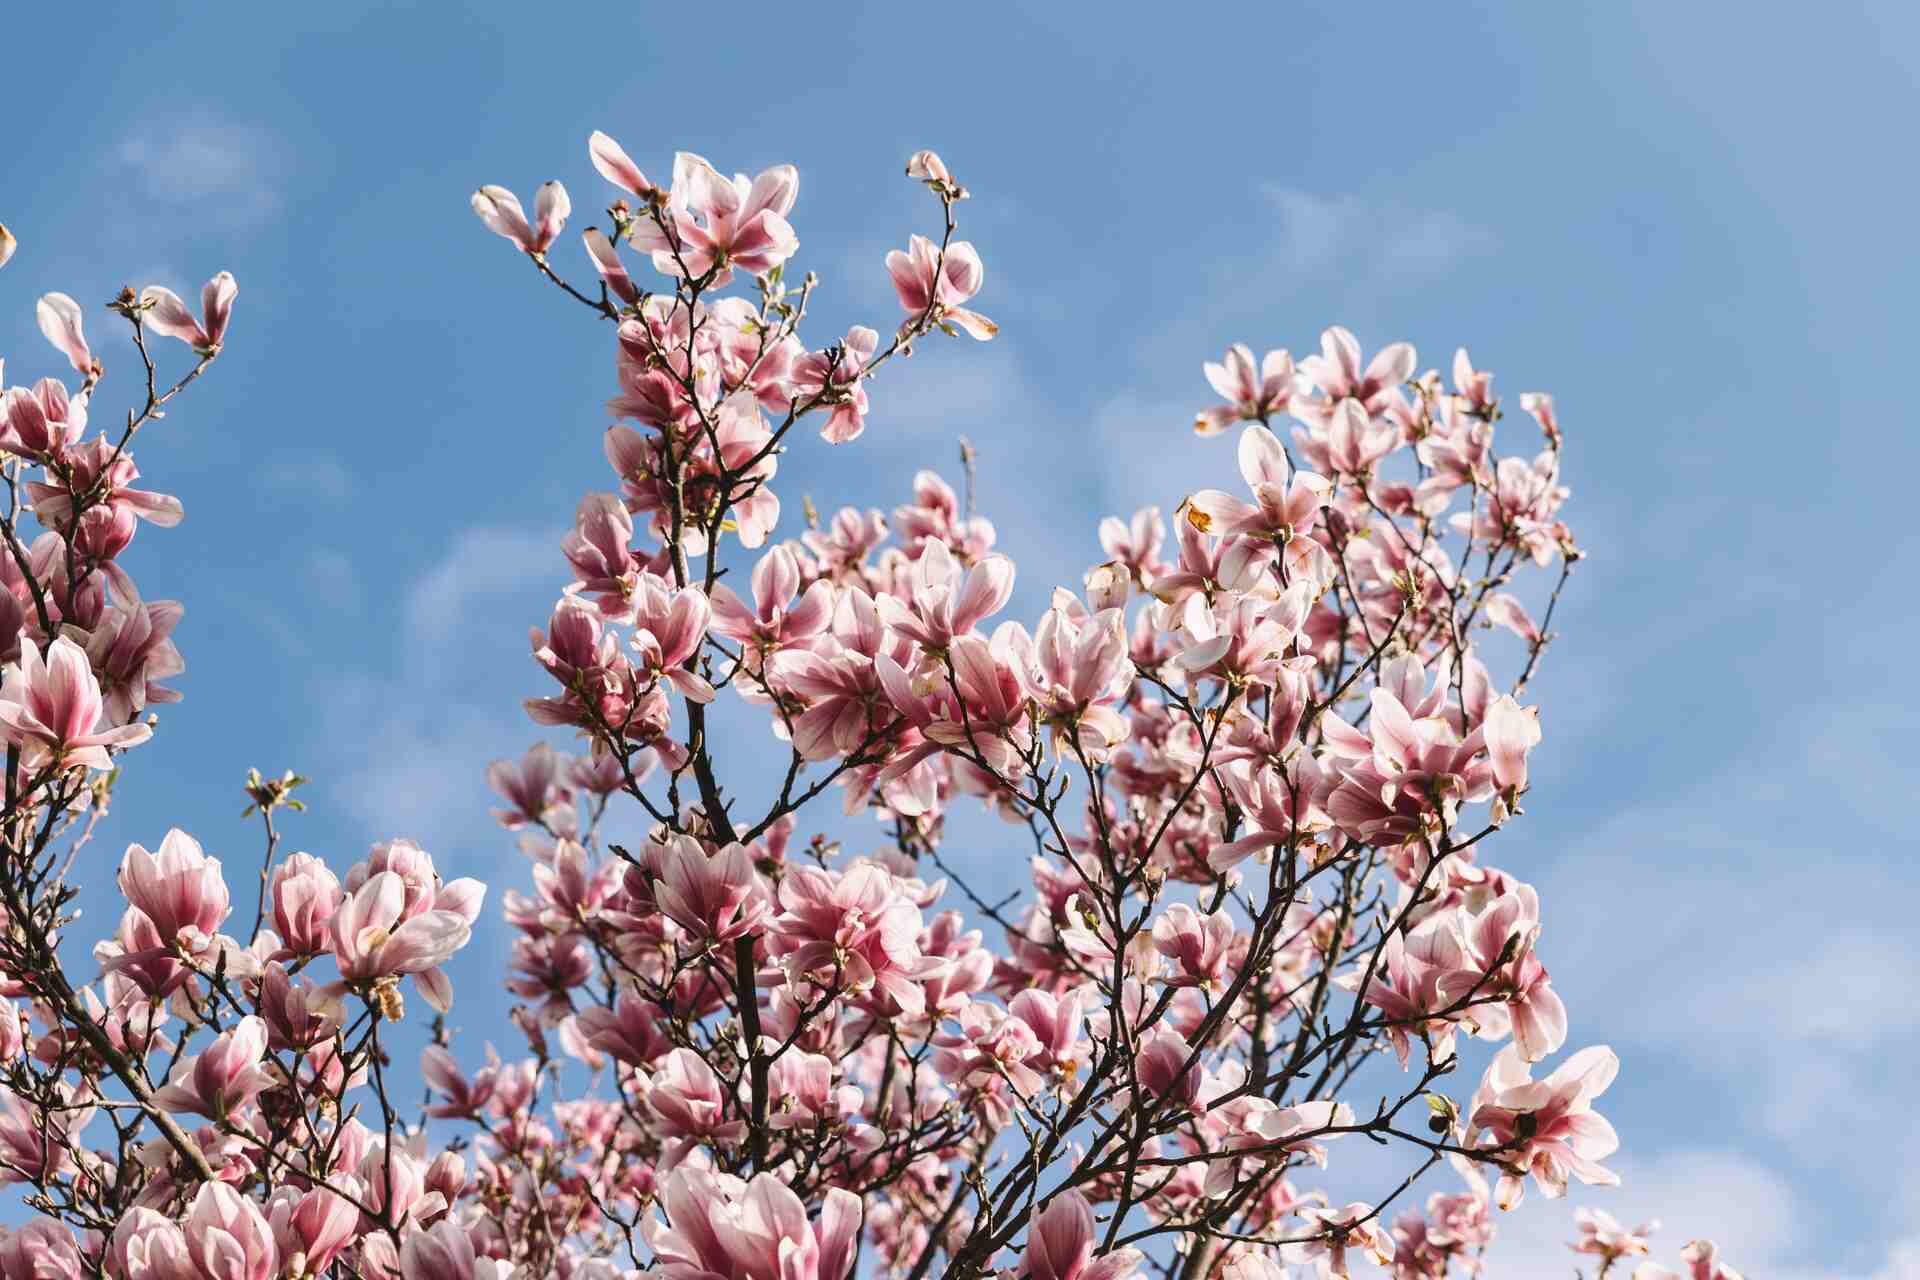 Spotęguj piękno razy kilka. Rozmnóż magnolię z gałązki i wzbogać swój ogród